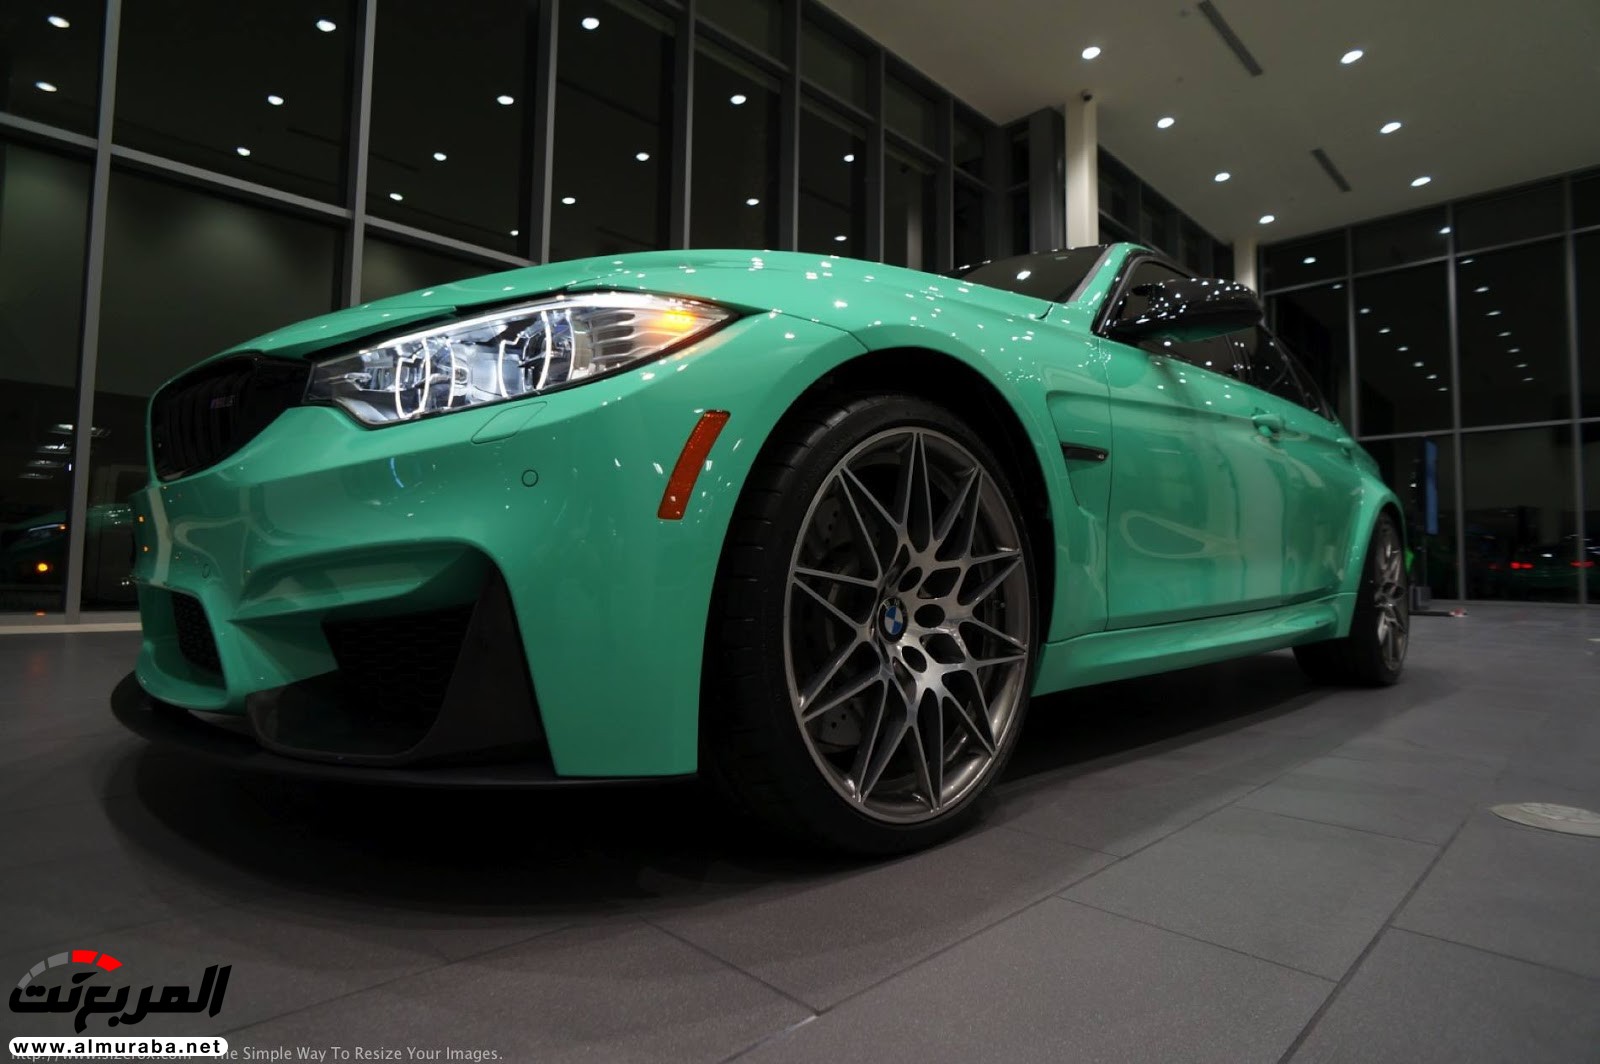 "بالصور" شاهد "بي إم دبليو" F80 M3 الخاصة بطلاء النعناع الأخضر BMW 91